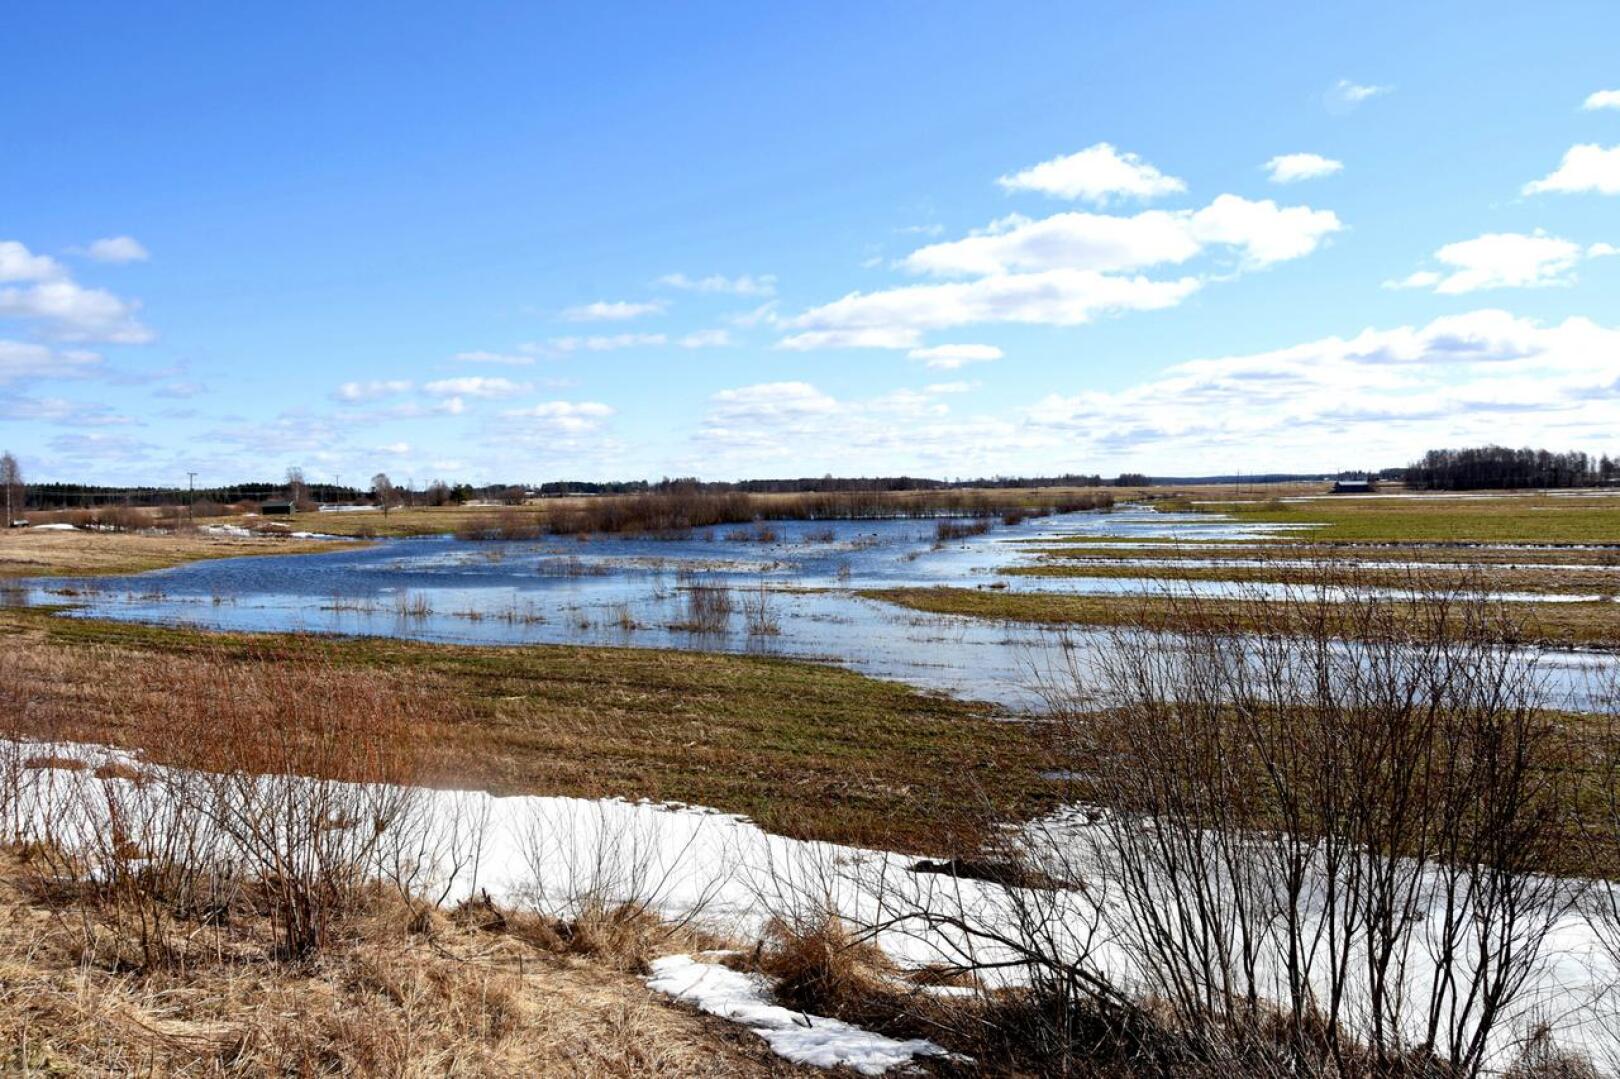 Keväälle 2022 ennakoidaan keskimääräistä suurempaa tulvaa. Kuvassa huhtikuun 2021 tulvia Vattukylältä.